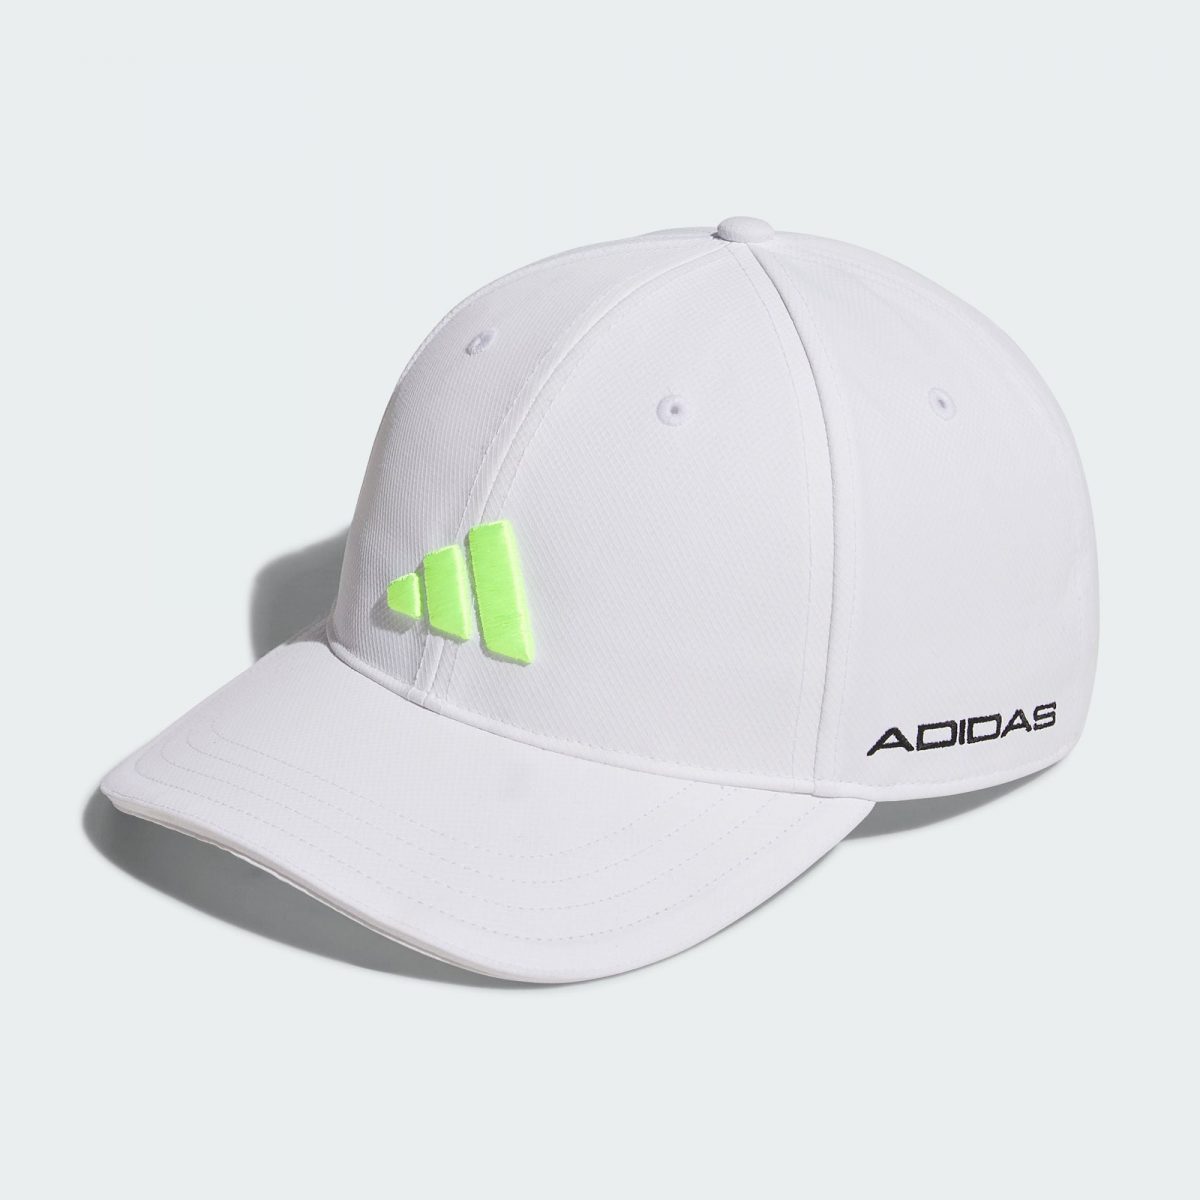 Мужская кепка adidas TOUR CAP фото